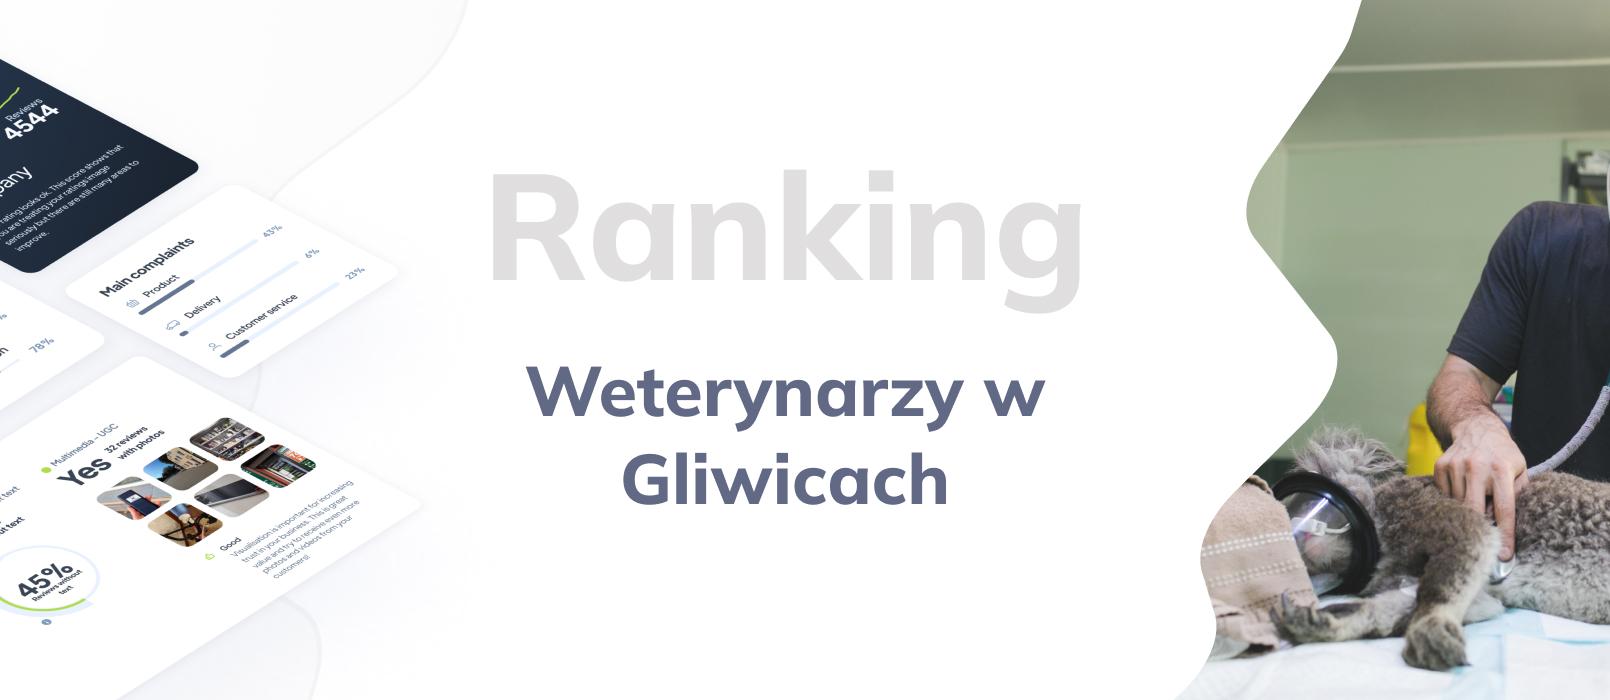 Weterynarze w Gliwicach - ranking TOP 10